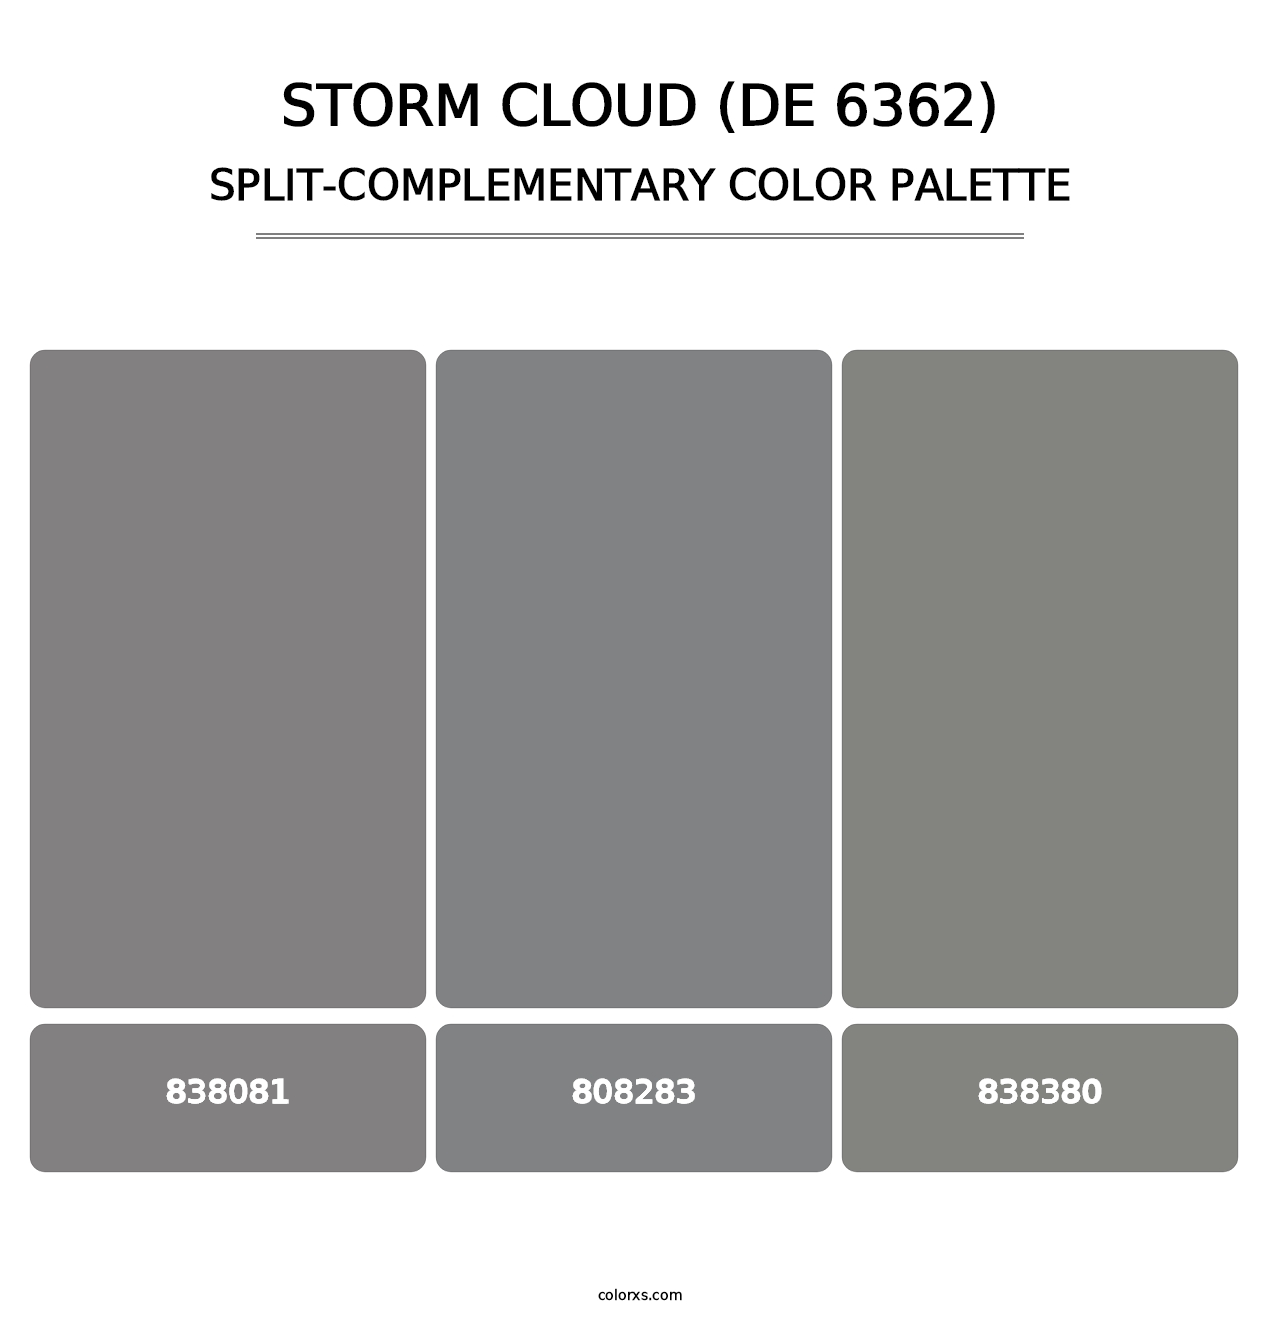 Storm Cloud (DE 6362) - Split-Complementary Color Palette